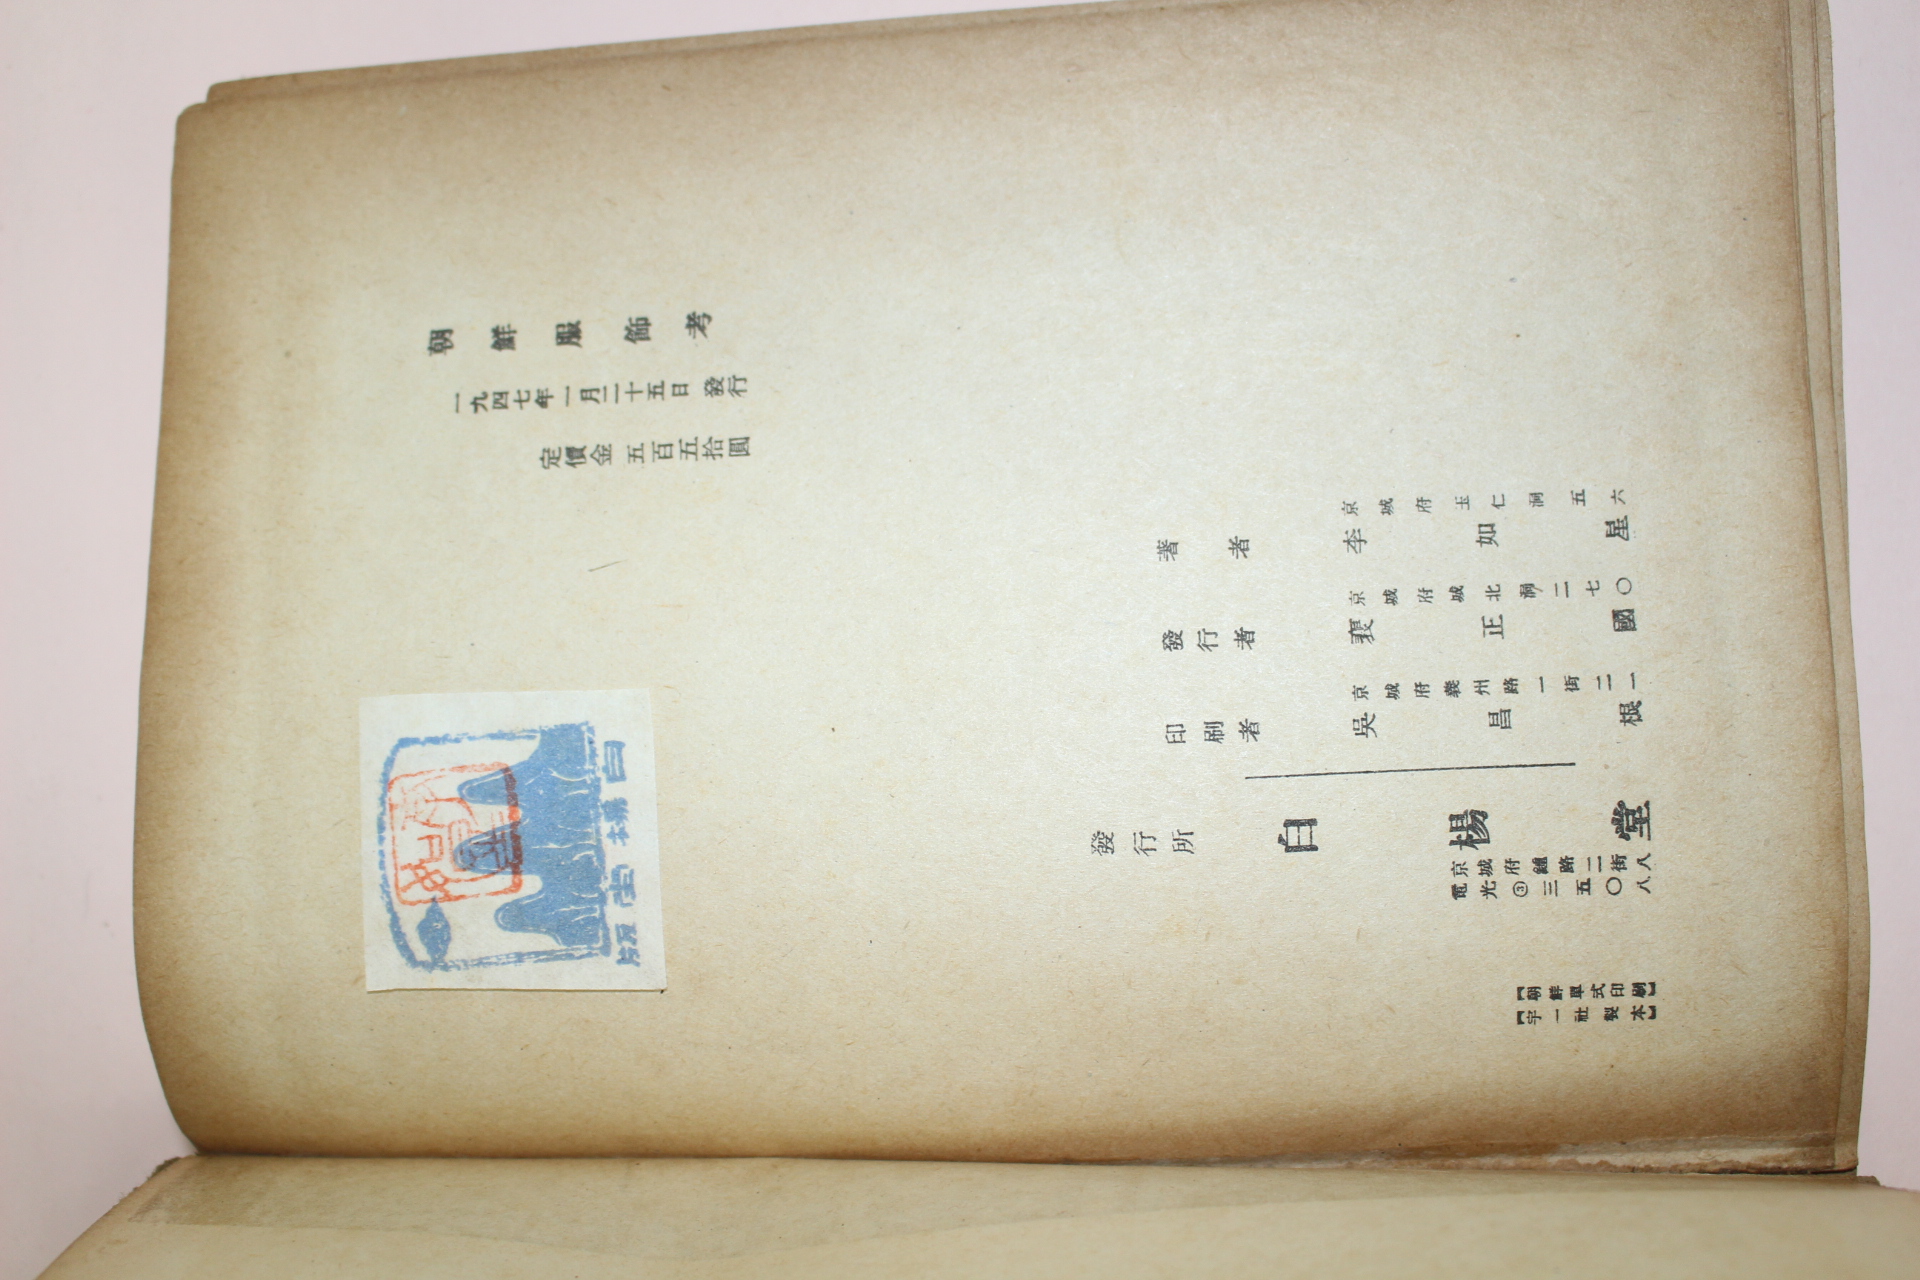 1947년초판 이여성(李如星) 조선복식고(朝鮮服飾考)